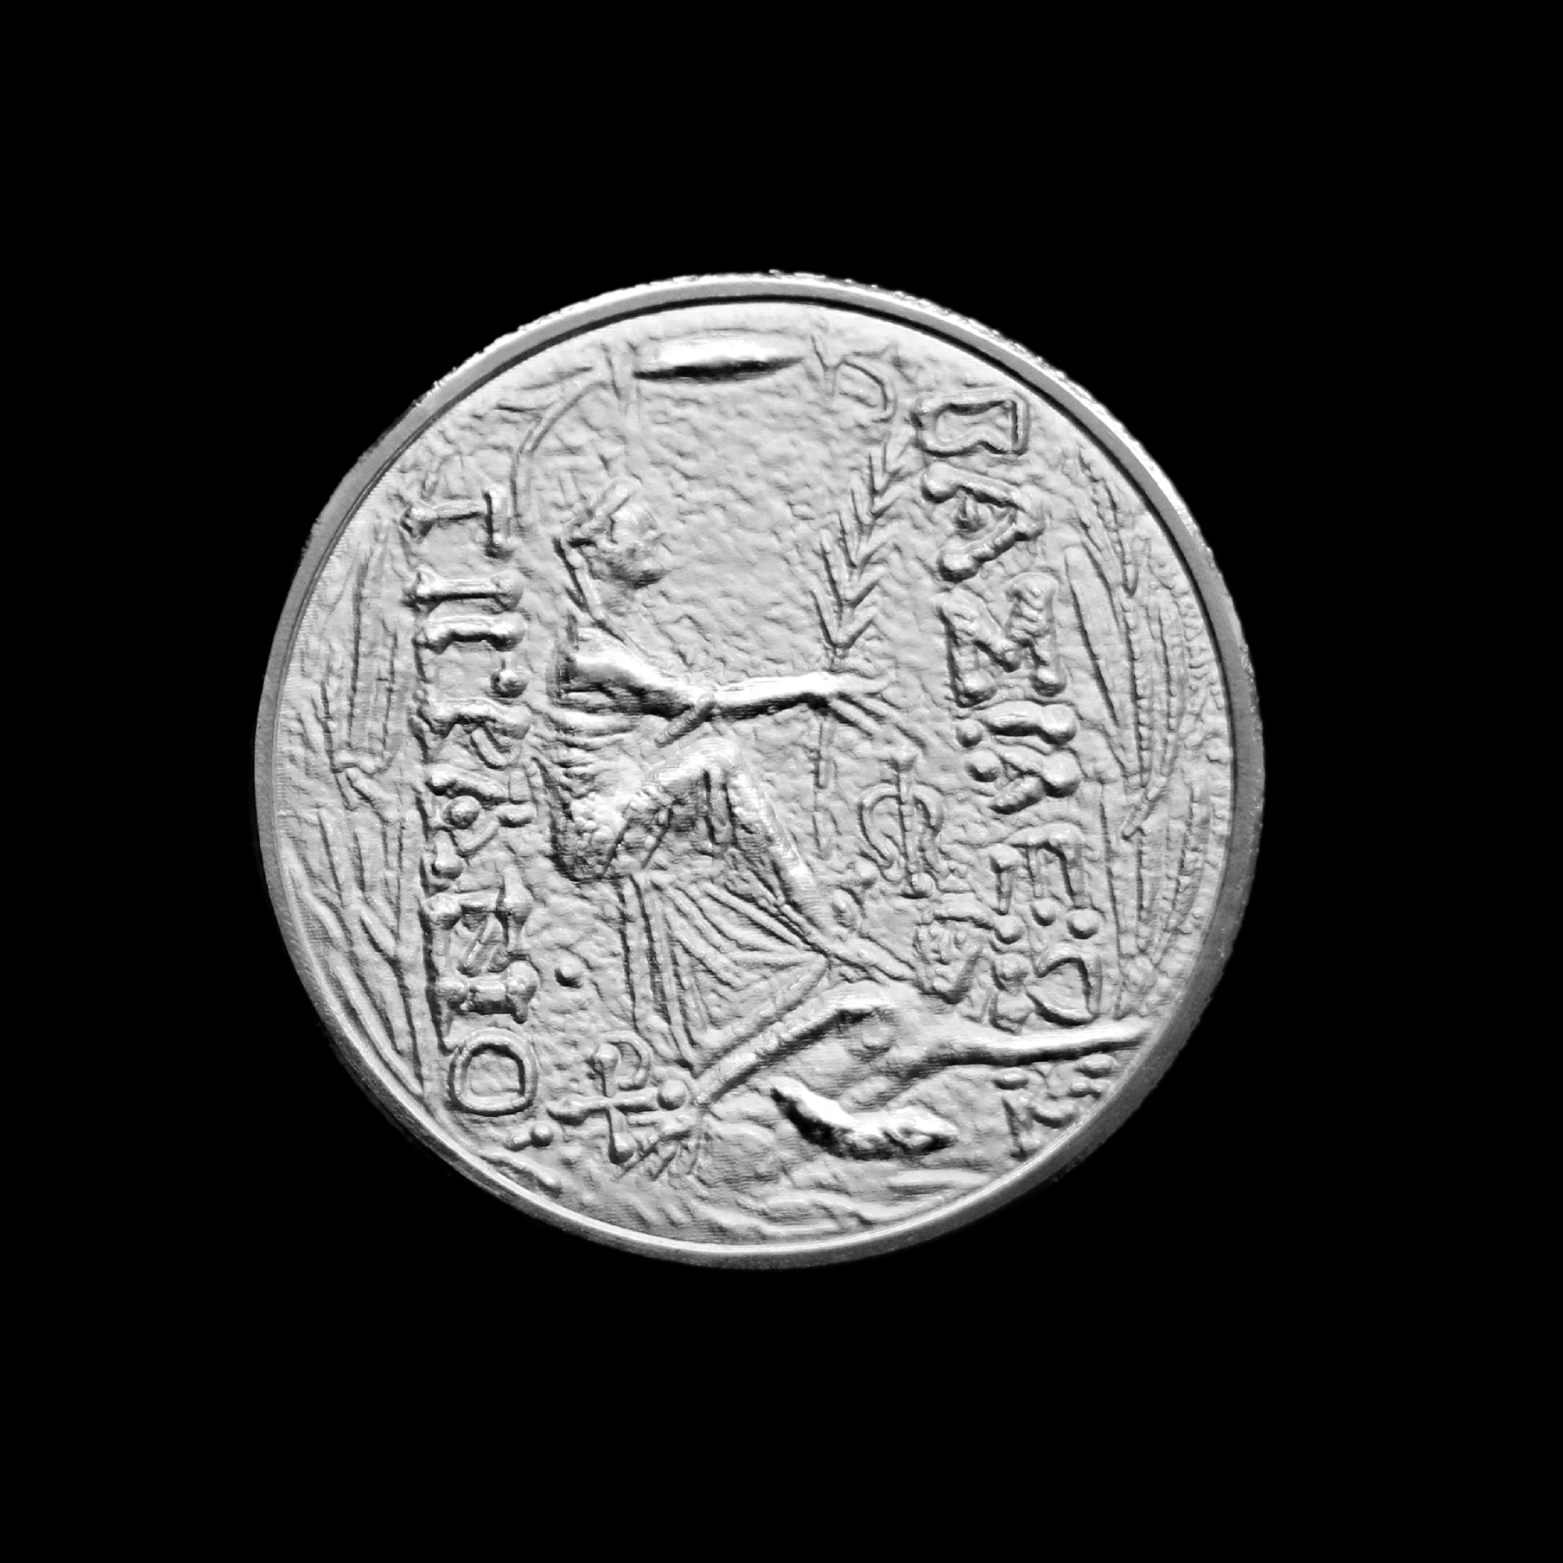 2022 Tigranes the Great Silver Tetradrachm Coin Pomegranate Mint